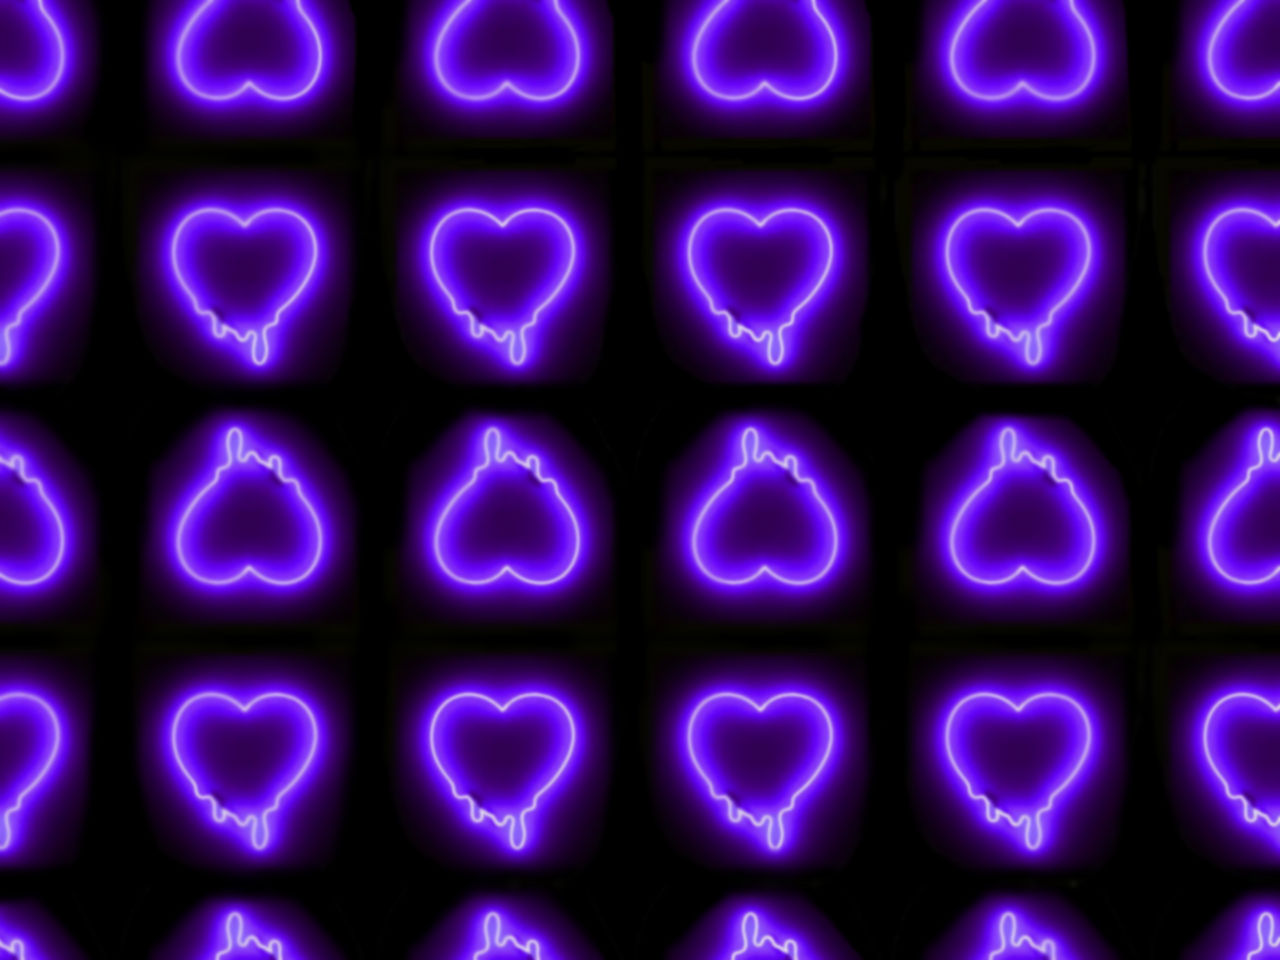 Neon purple heart background với ánh sáng neon tạo nên không gian đầy mê hoặc và lôi cuốn. Chiếc trái tim tím đang rực sáng giữa bóng tối sẽ đưa bạn đến nơi mà màu sắc và ánh sáng hòa quyện tạo nên một trải nghiệm đầy kích thích.